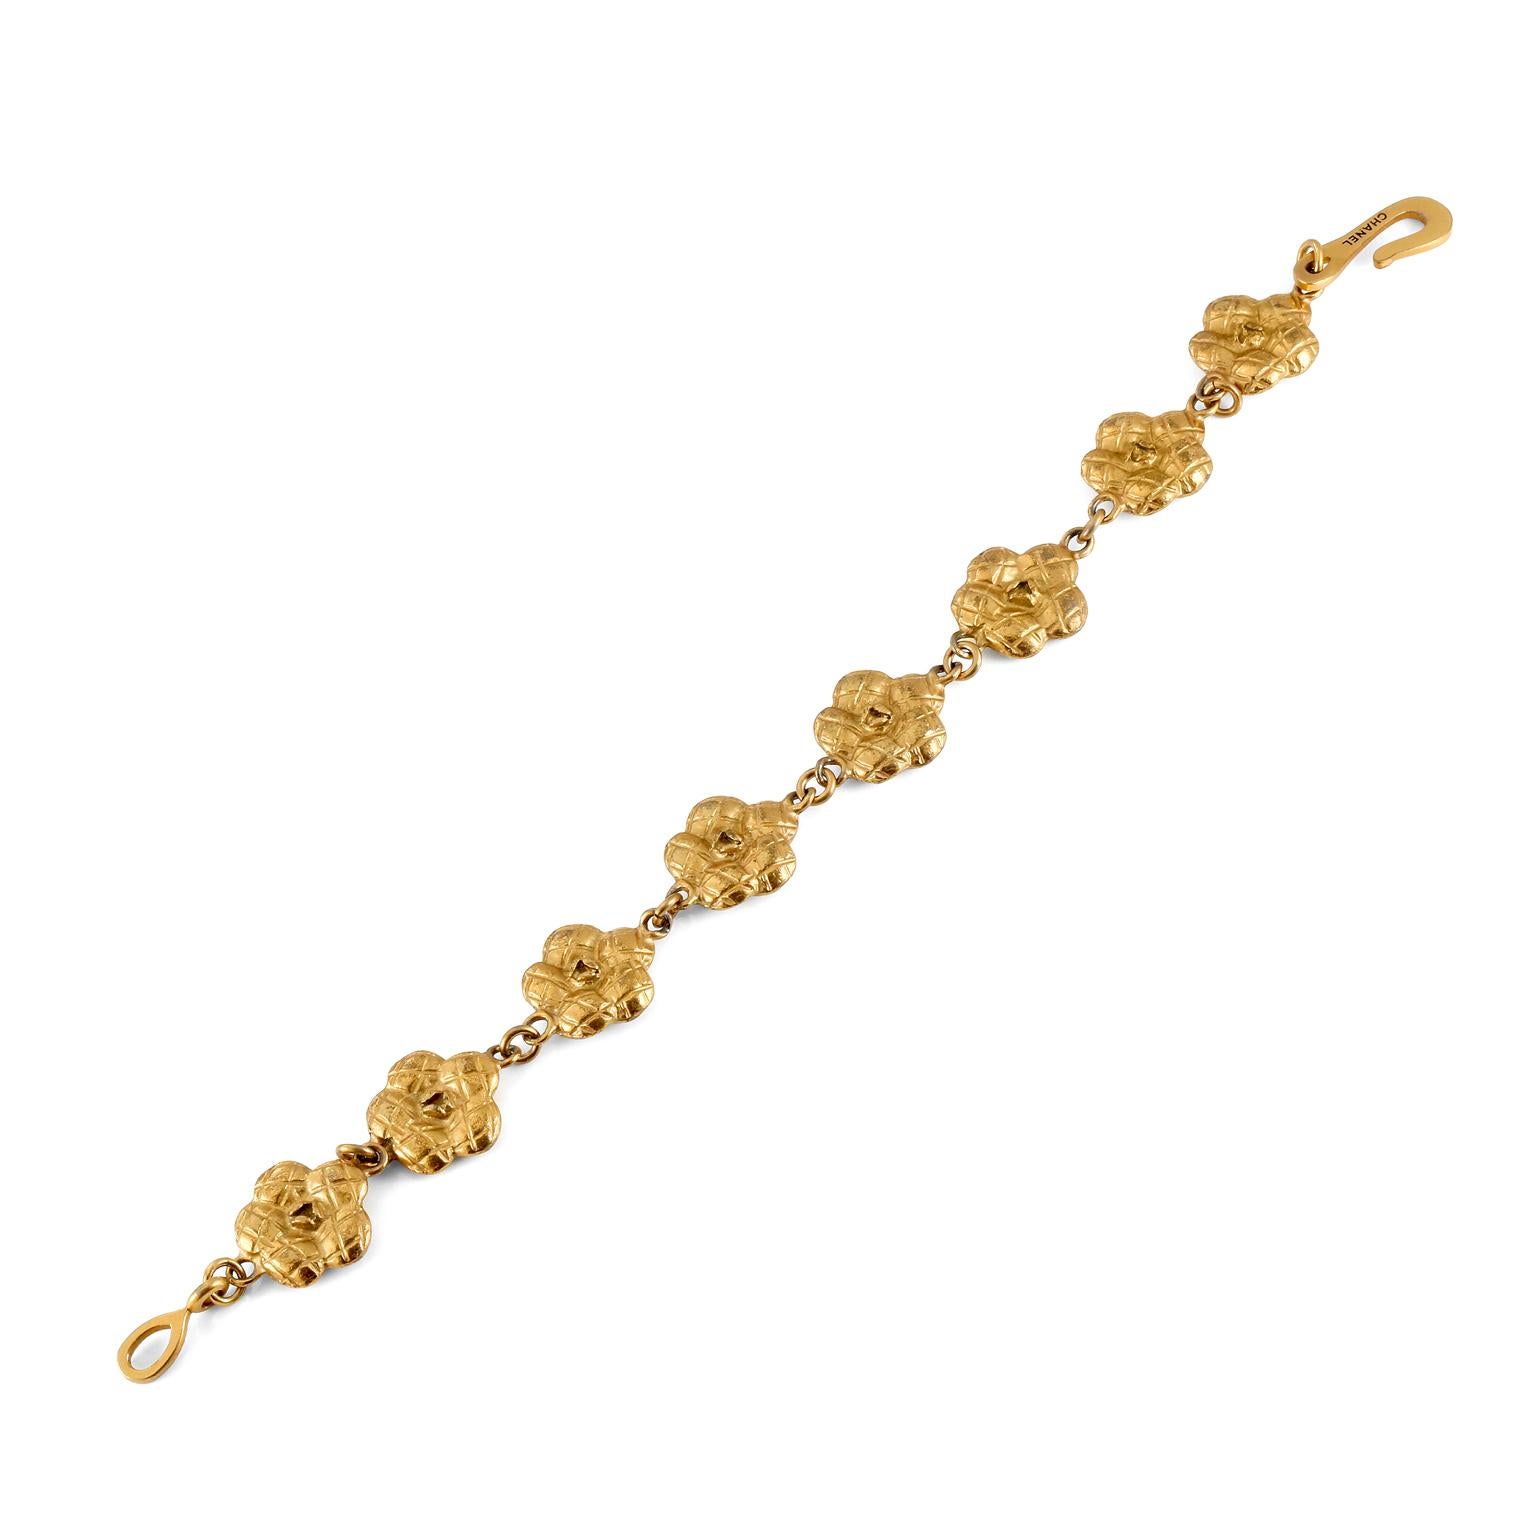 Diese authentische Chanel Gold Kamelie Blume Armband ist in ausgezeichnetem Zustand aus den späten 1990er Jahren.  Acht gesteppte Kamelienblüten sind in diesem klassischen Armband miteinander verbunden.  Ungefähr 8 Zoll.  Hergestellt in Frankreich. 